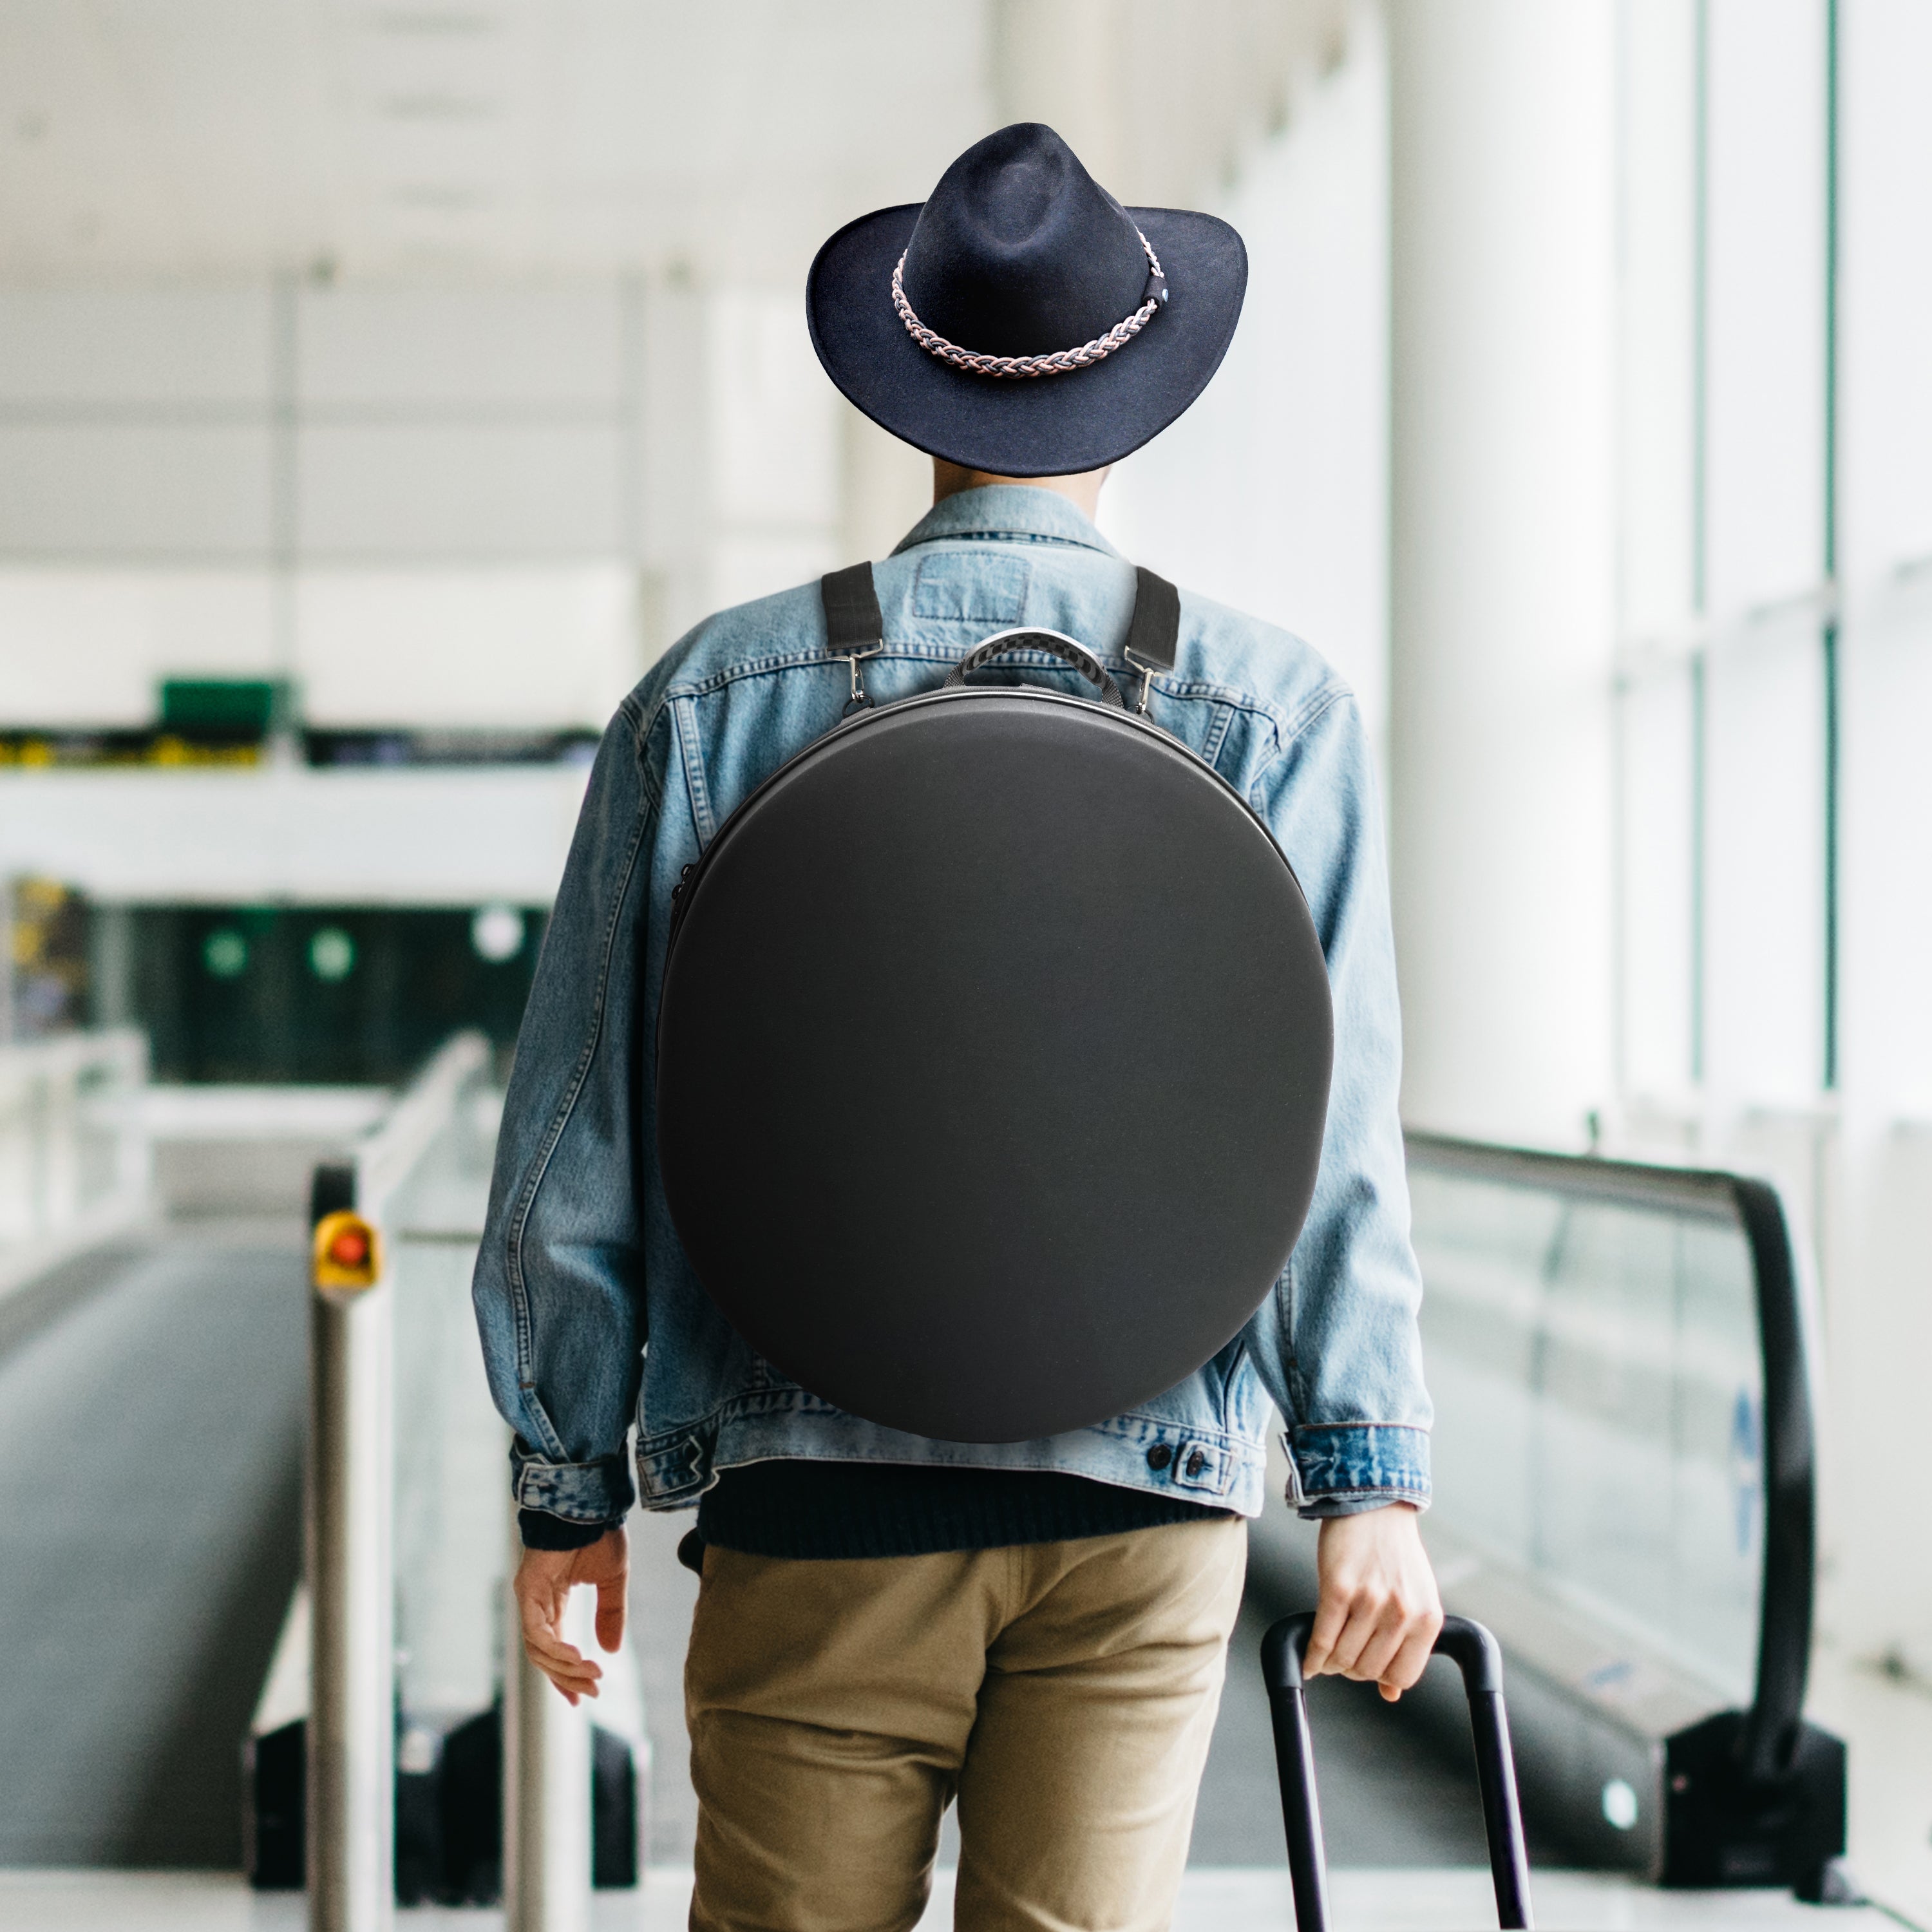 Atzi Hats Cowboy Hat Box Large Travel Crush-Proof Wide Brim